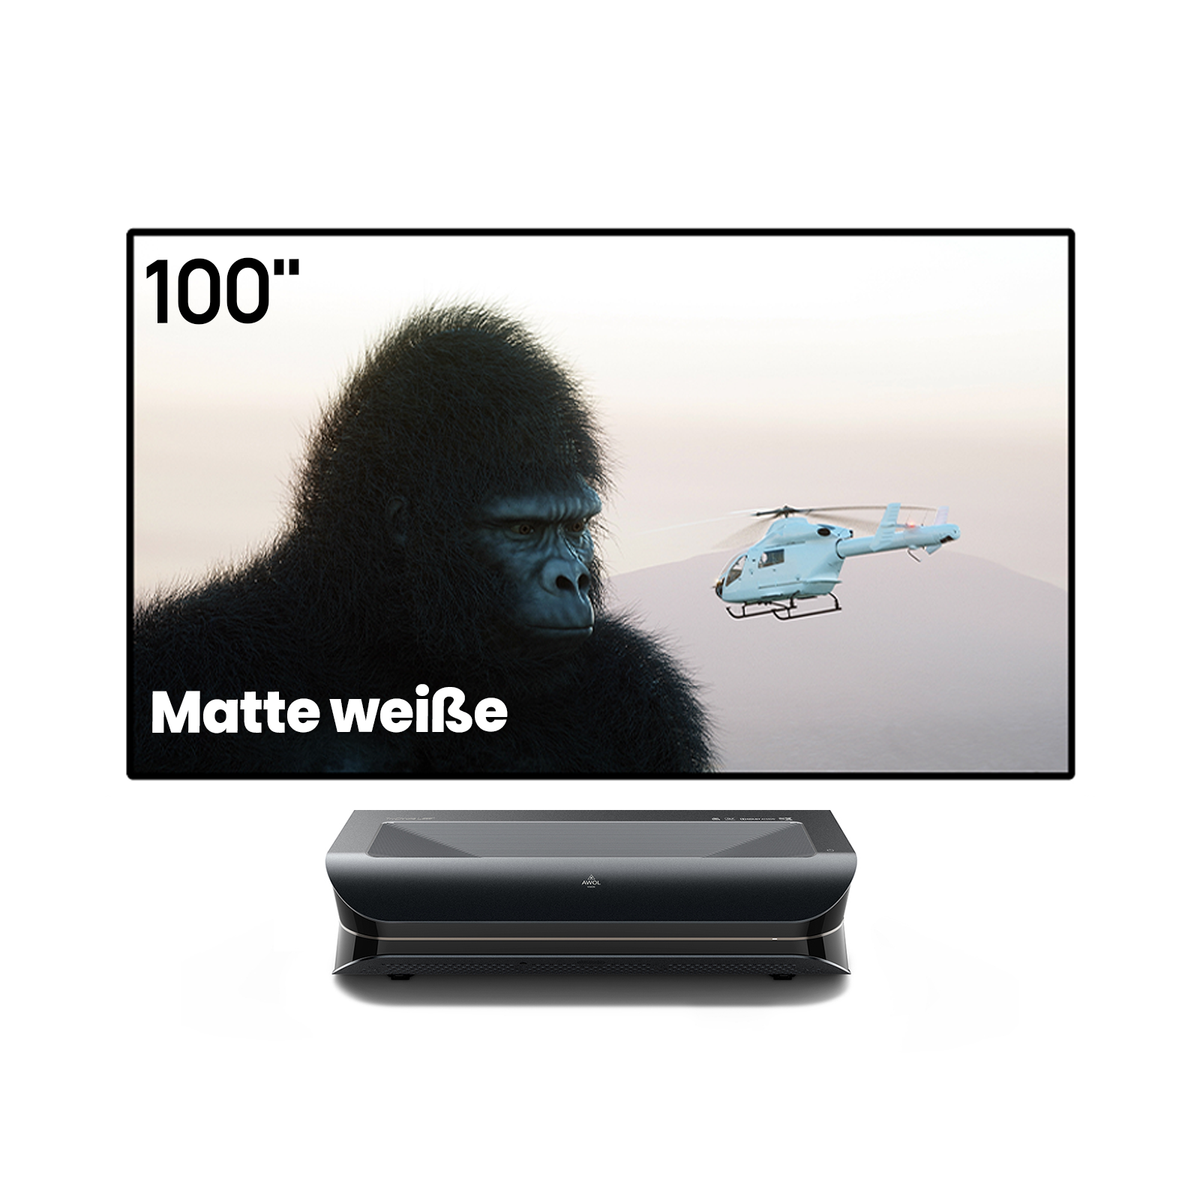 LTV-3000 Pro + 100''-150'' Mattweißer Leinwand